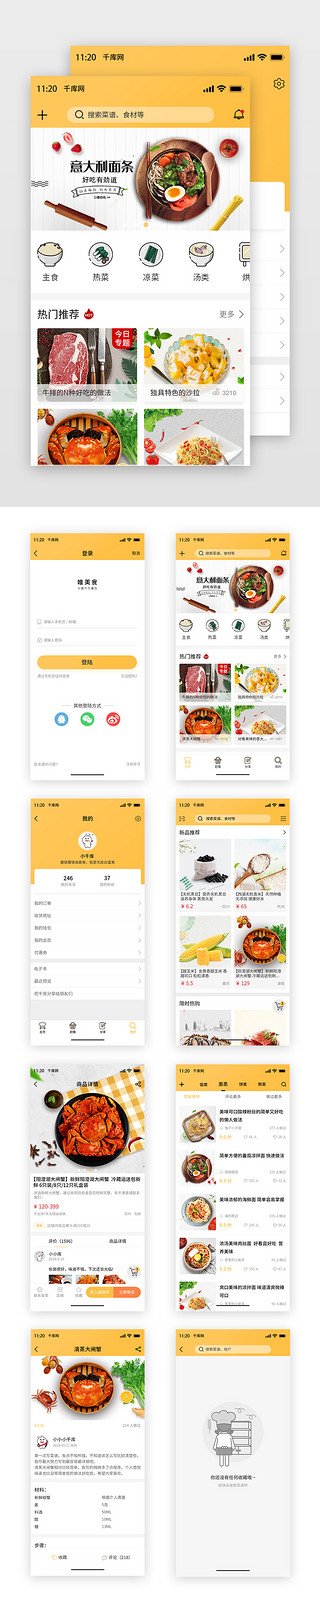 冻榴莲广告模板UI设计素材_黄色简约卡片试厨房美食菜谱APP模板